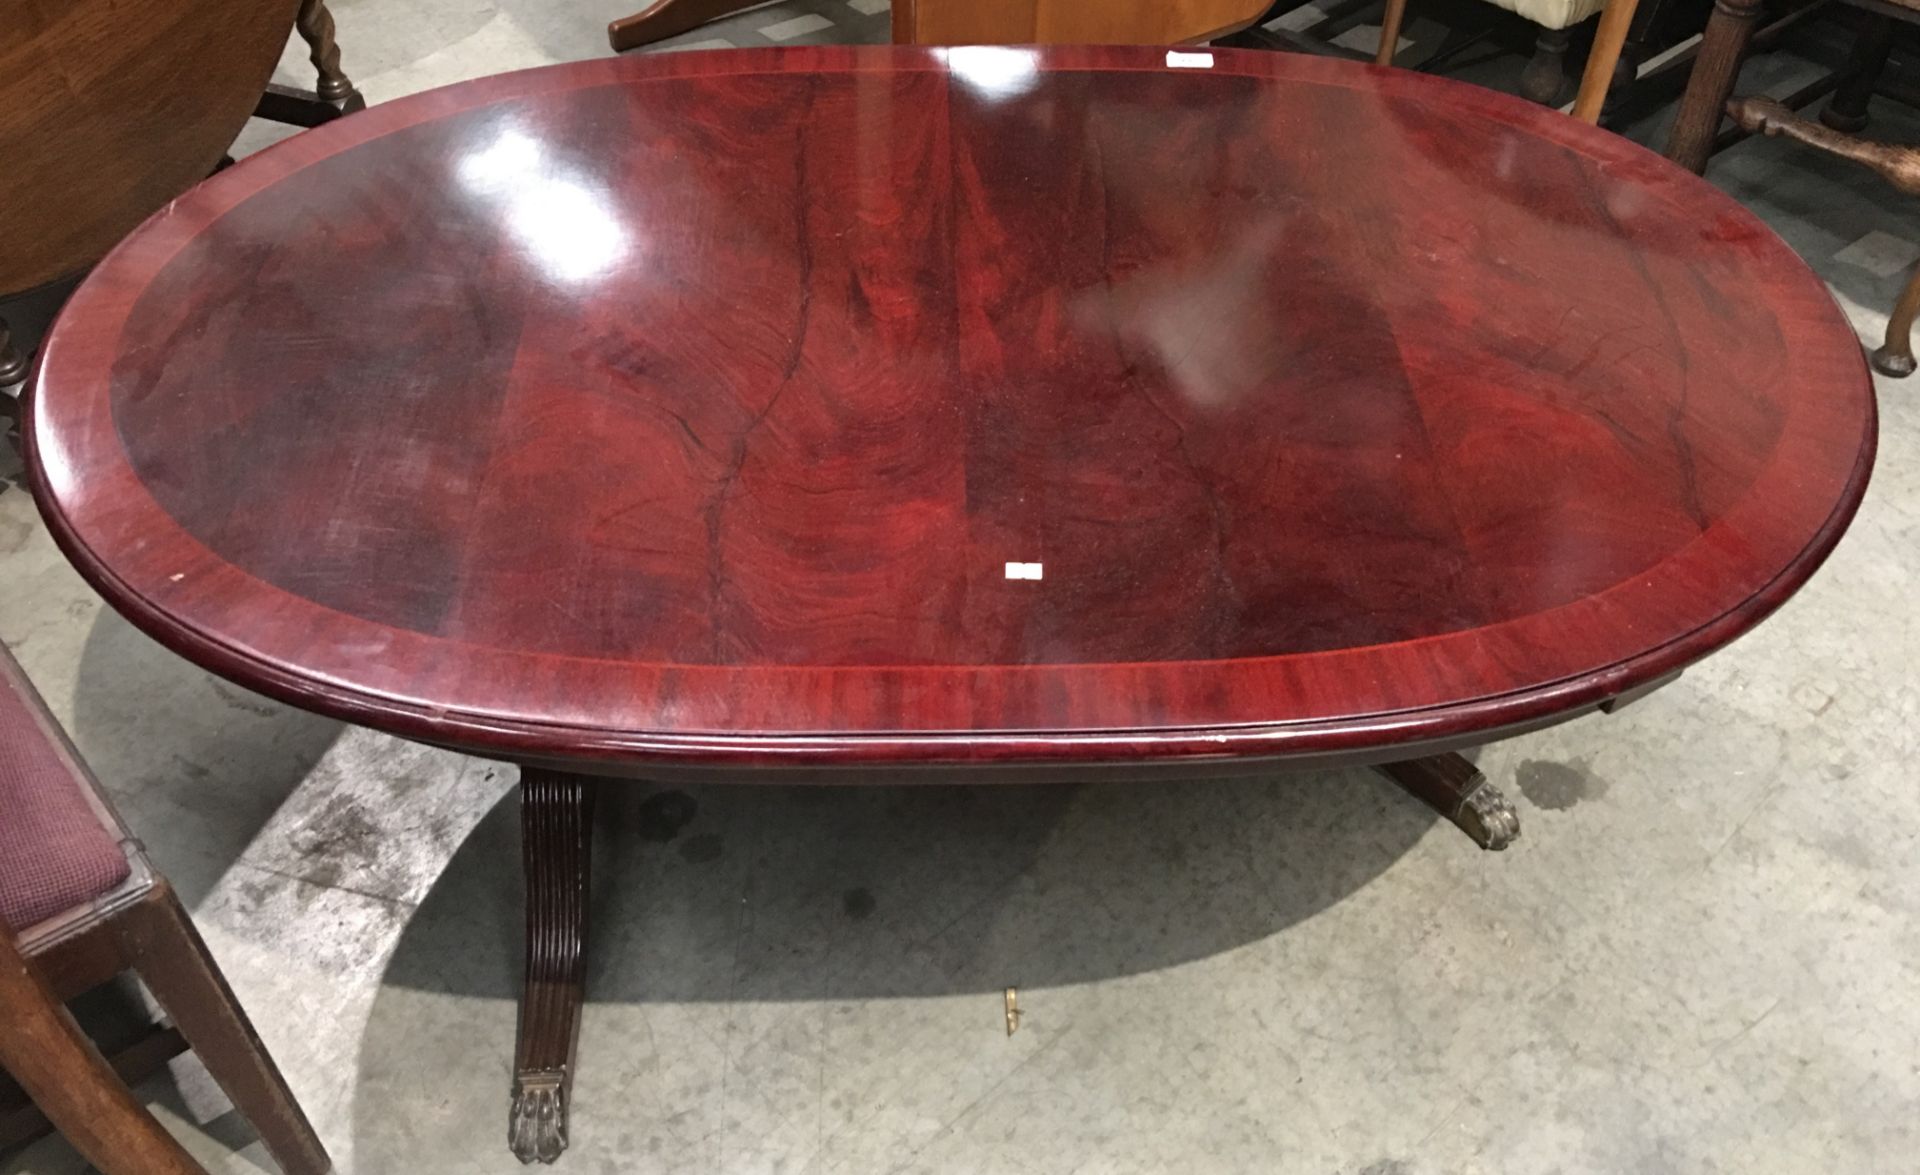 Mahogany oval coffee table 50"